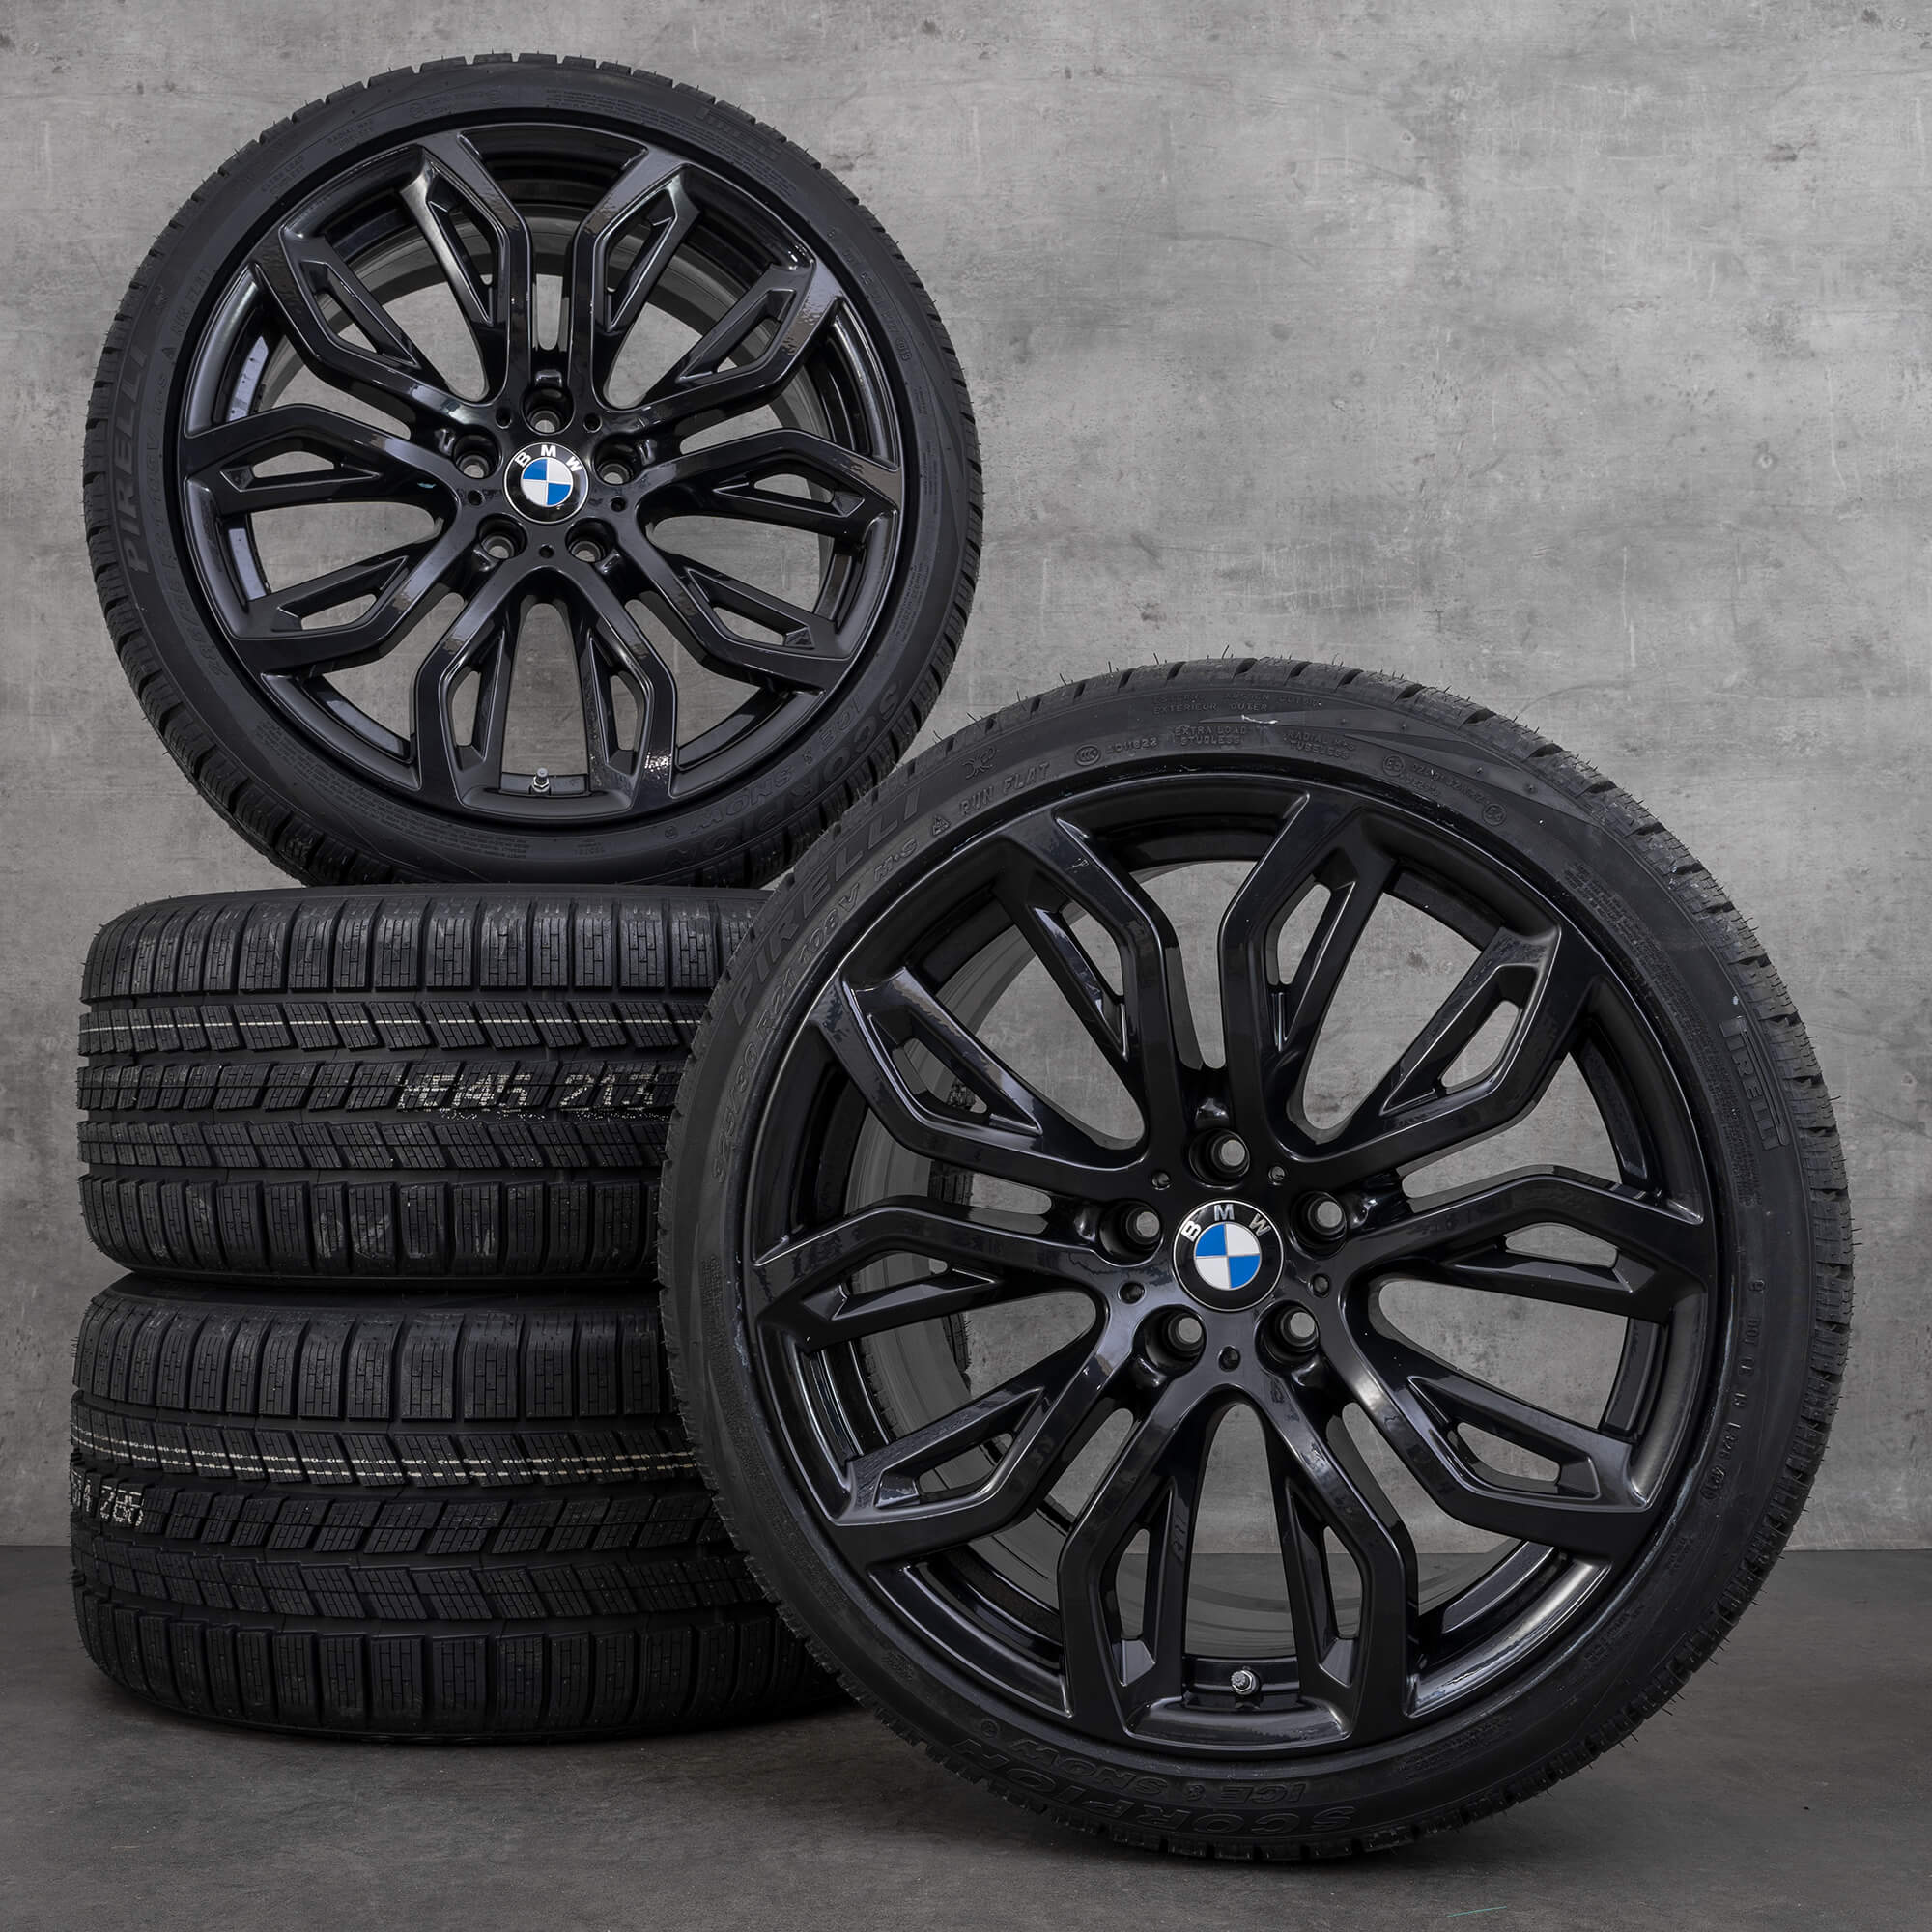 Jantes de pneus verão originais BMW X5M E70 X6M E71 21 polegadas estilo 375 M